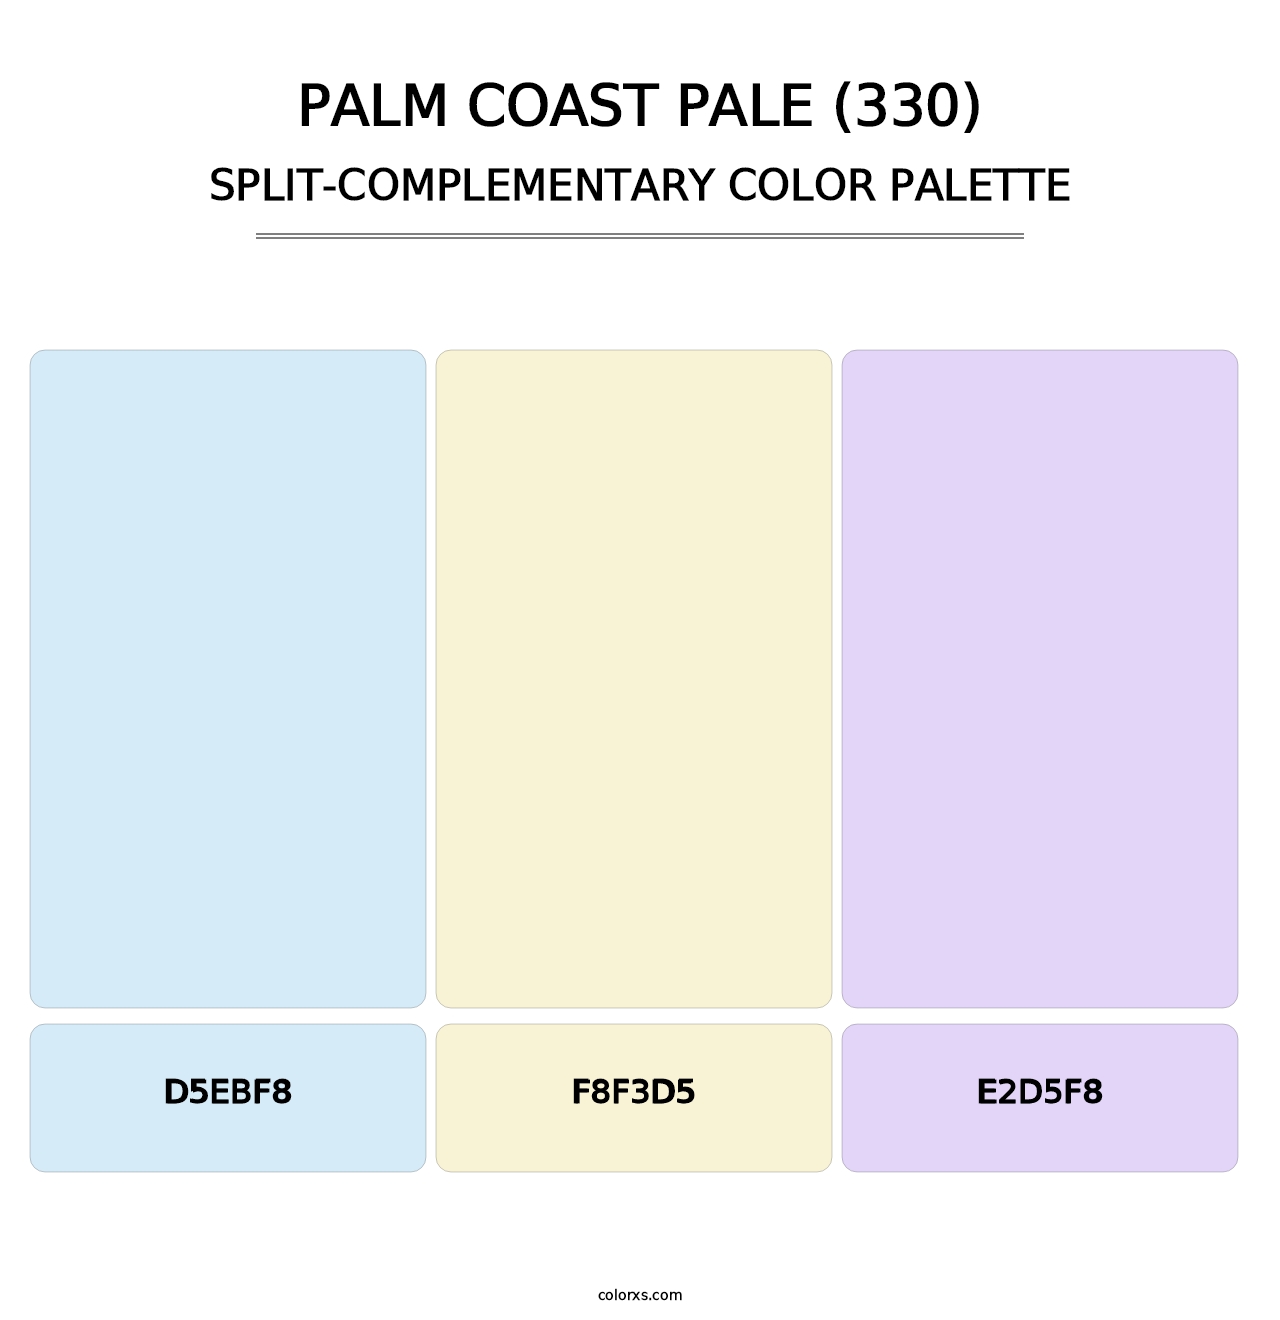 Palm Coast Pale (330) - Split-Complementary Color Palette